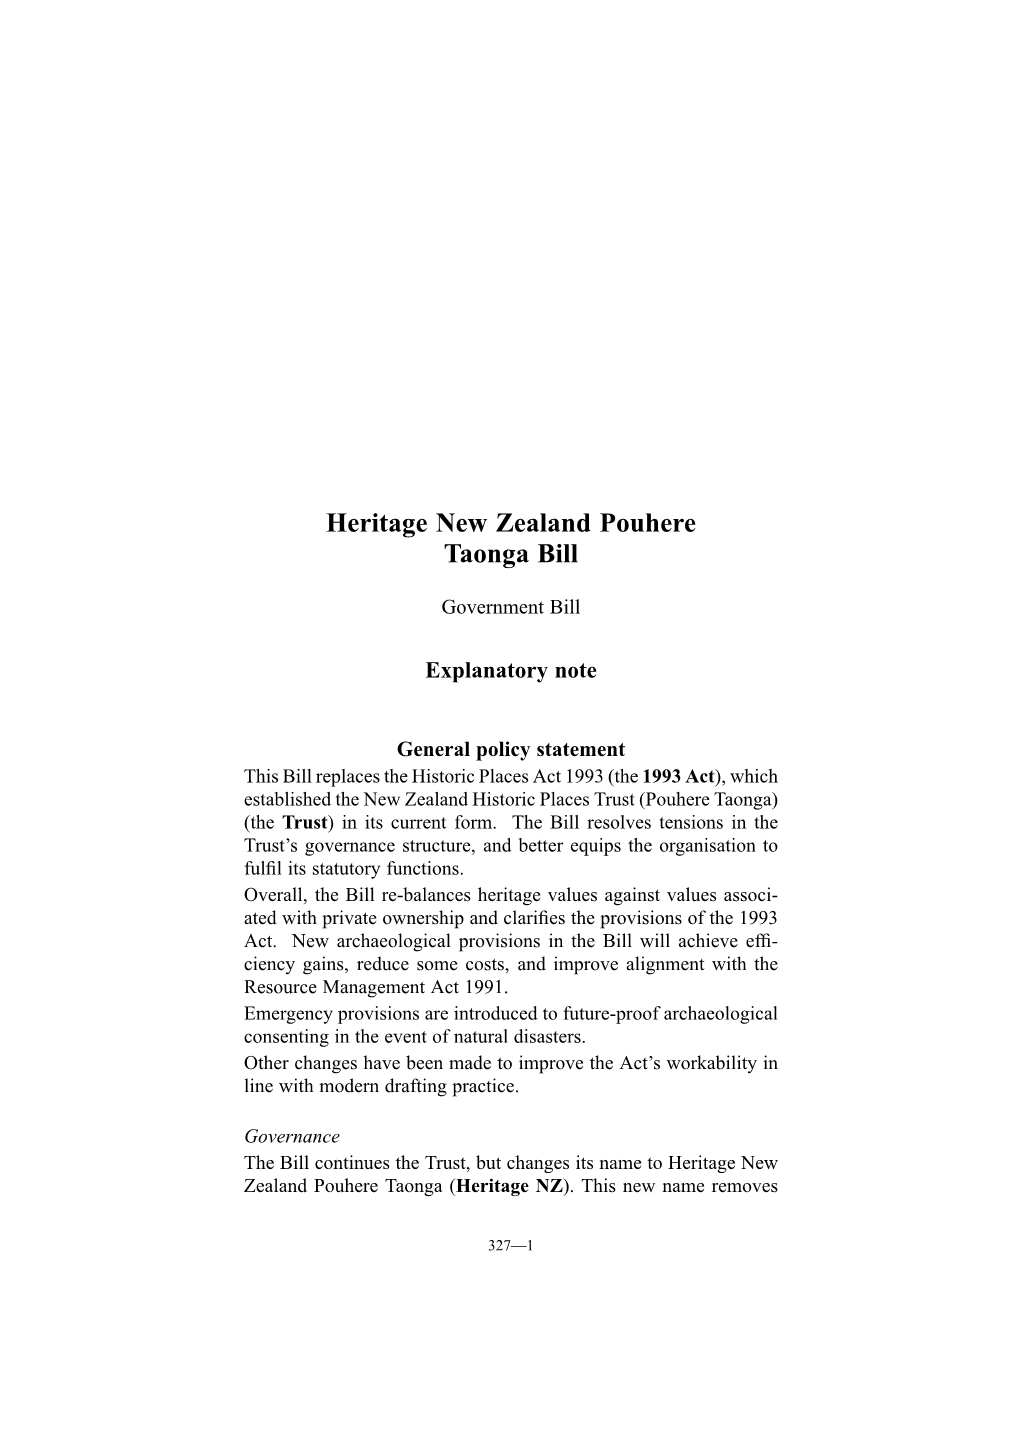 Heritage New Zealand Pouhere Taonga Bill